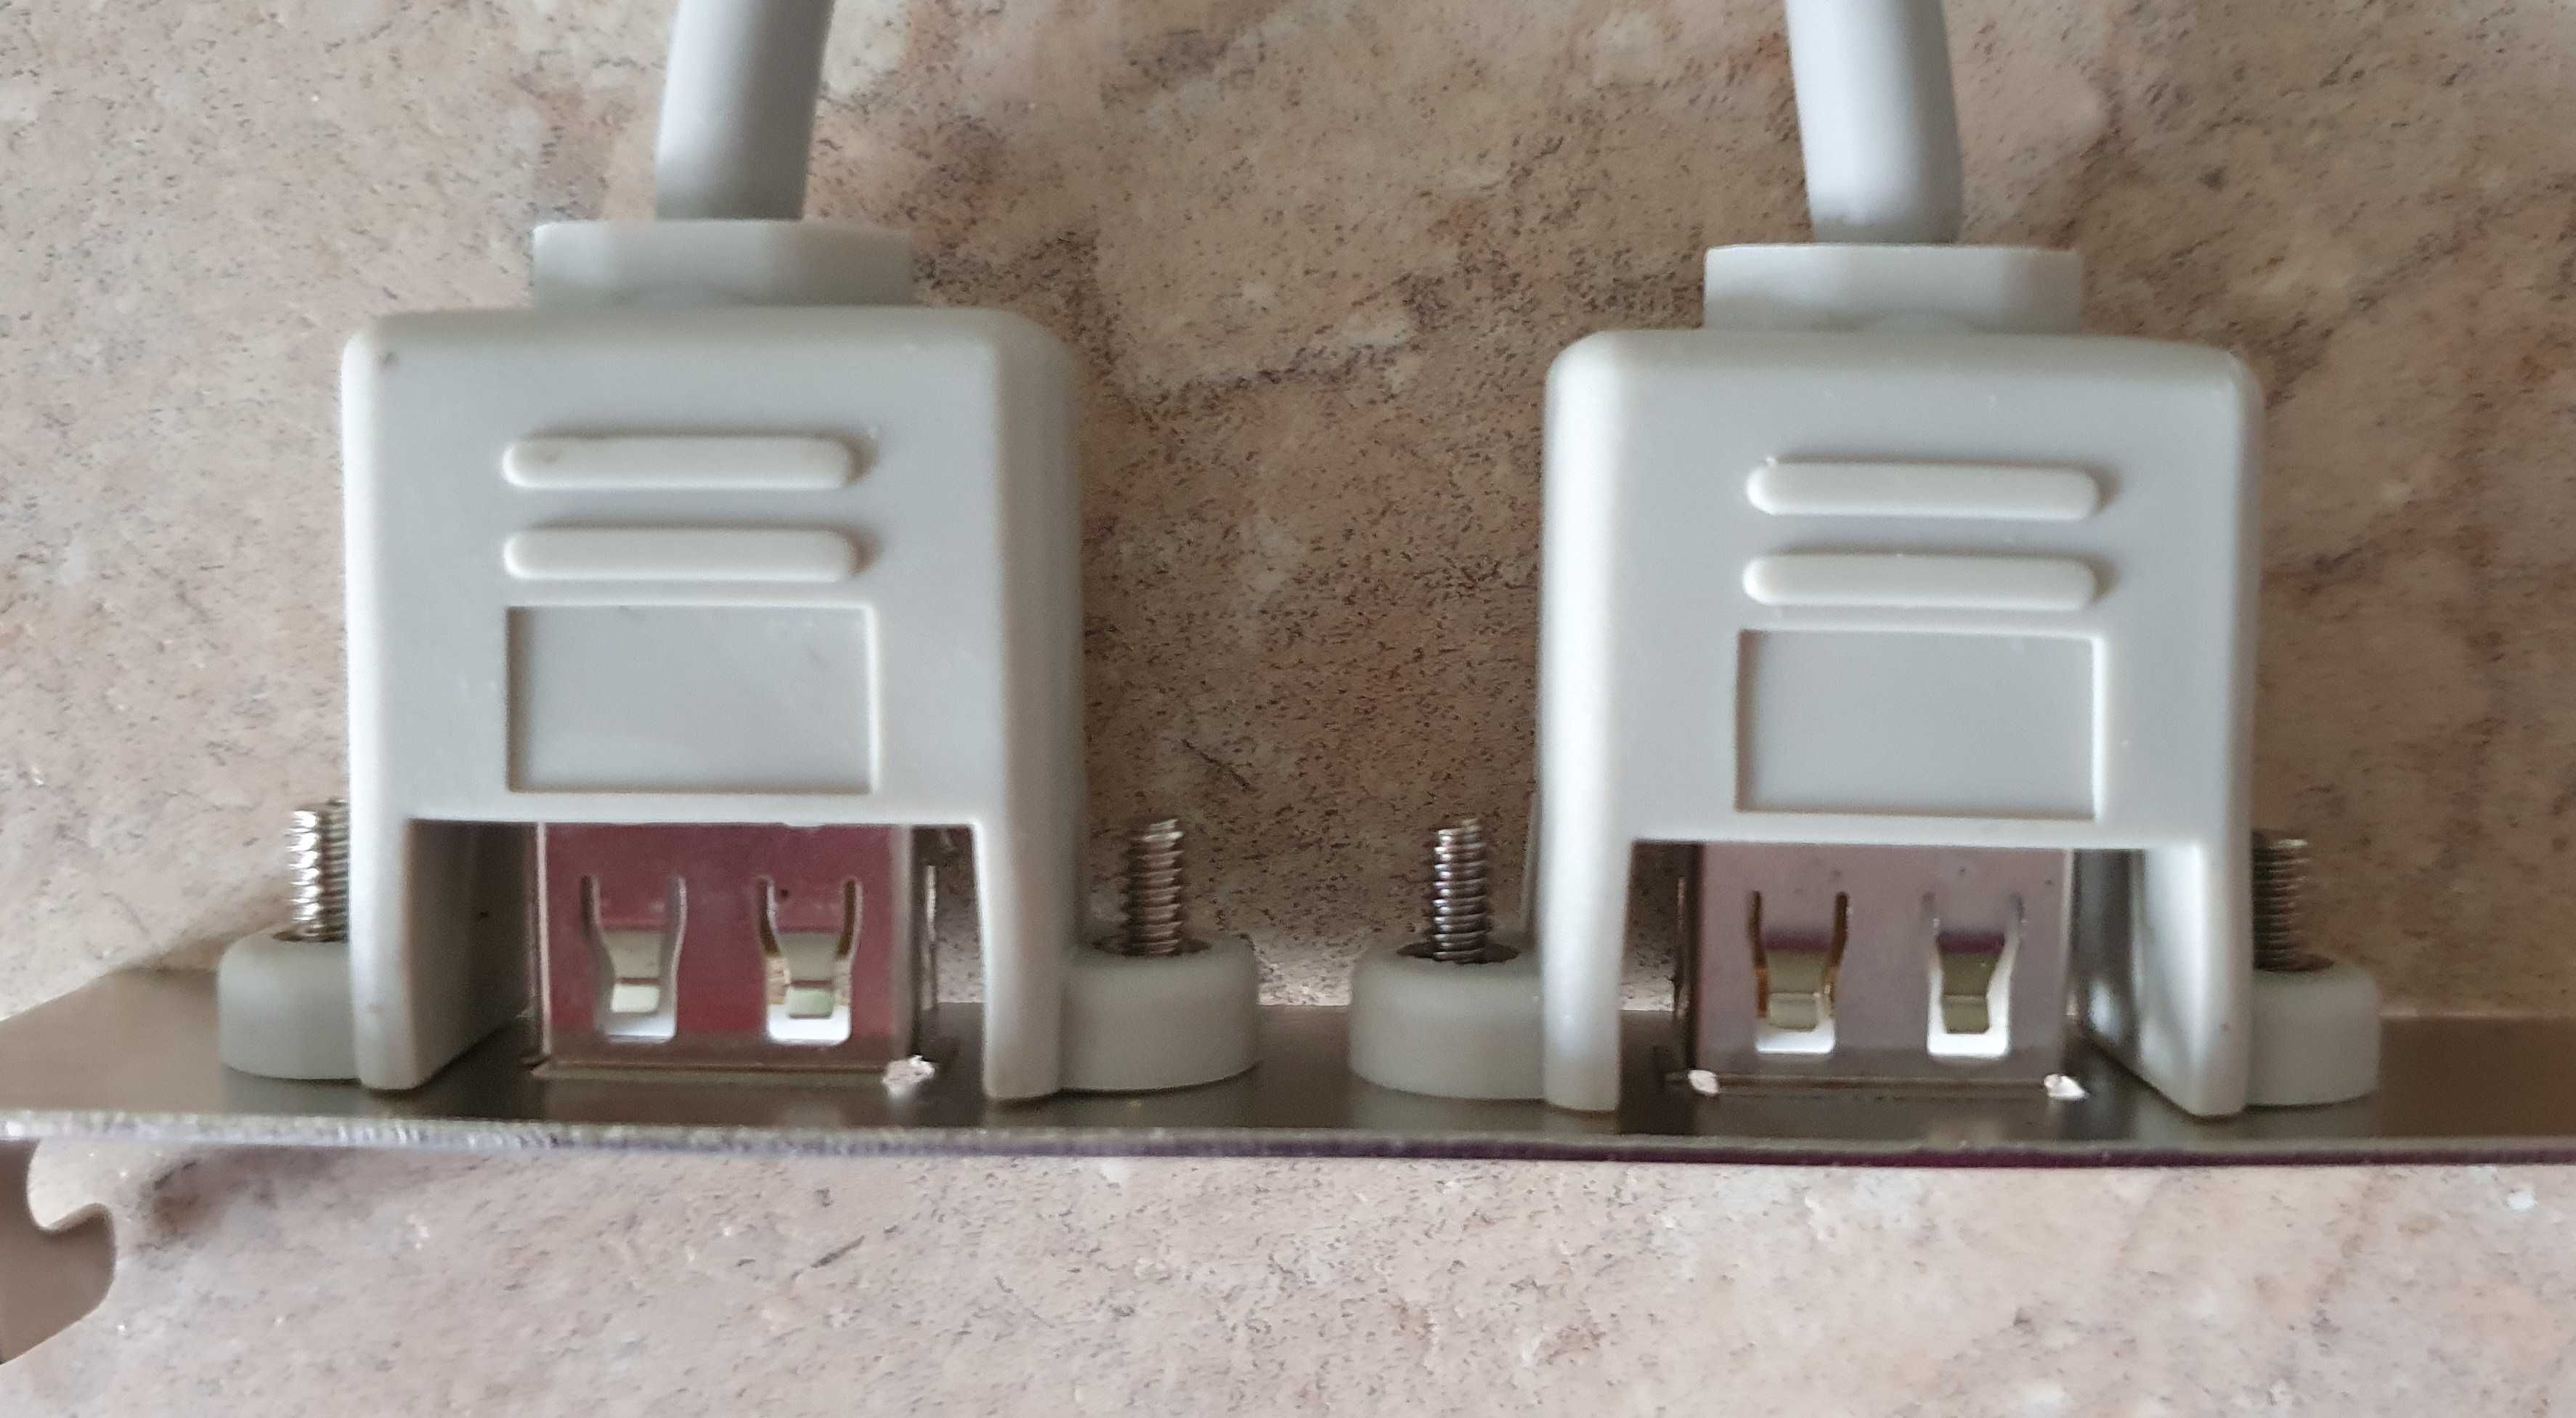 Kabel / śledź z 2xUSB A / 2x 5 pin - do płyty głównej komputera